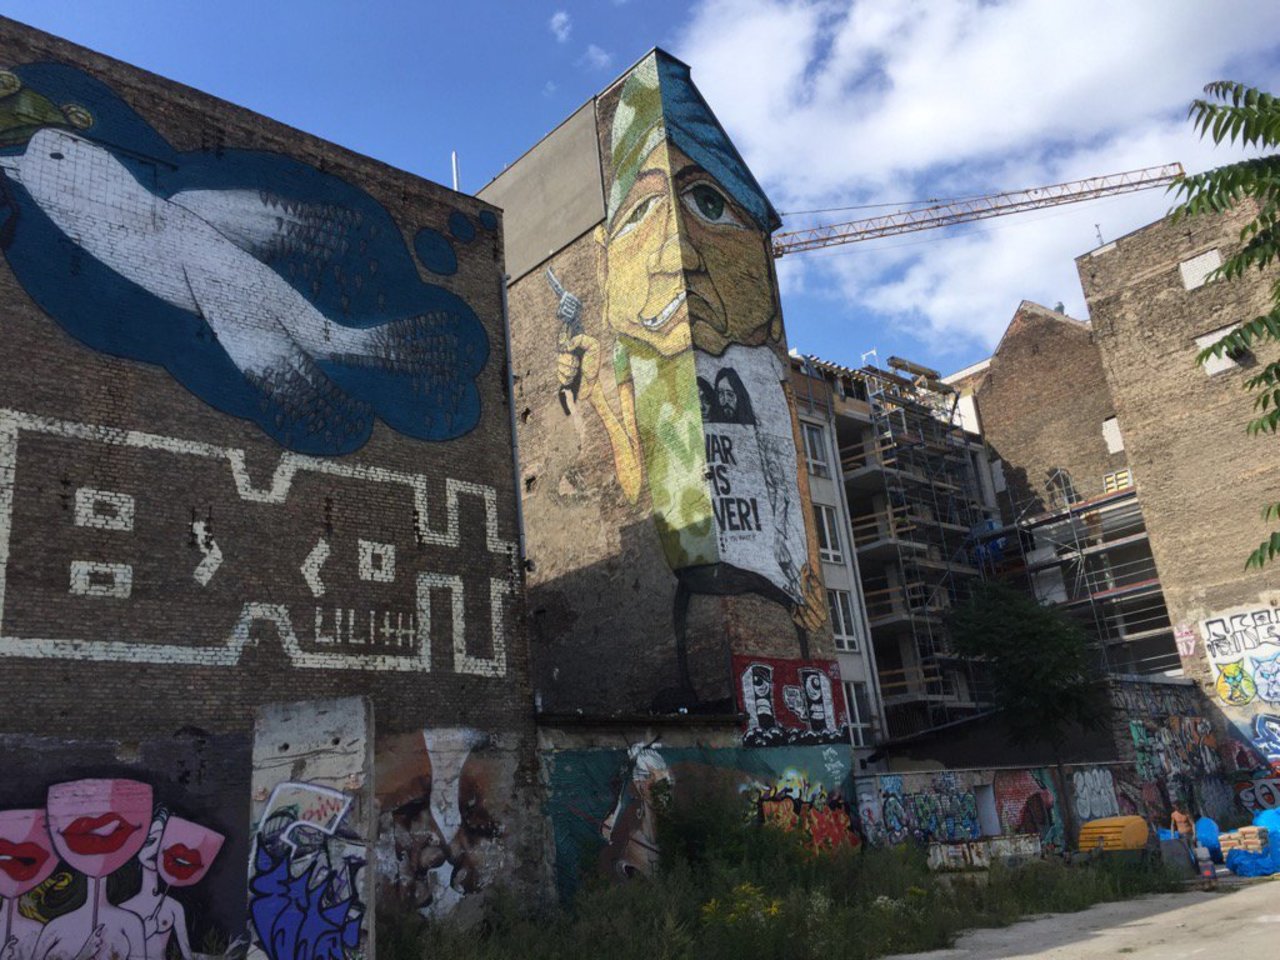 One of the hidden and scarcer streetart places in Berlin. #Berlin #Kreuzberg #streetart #art https://t.co/XPloNMzU9M